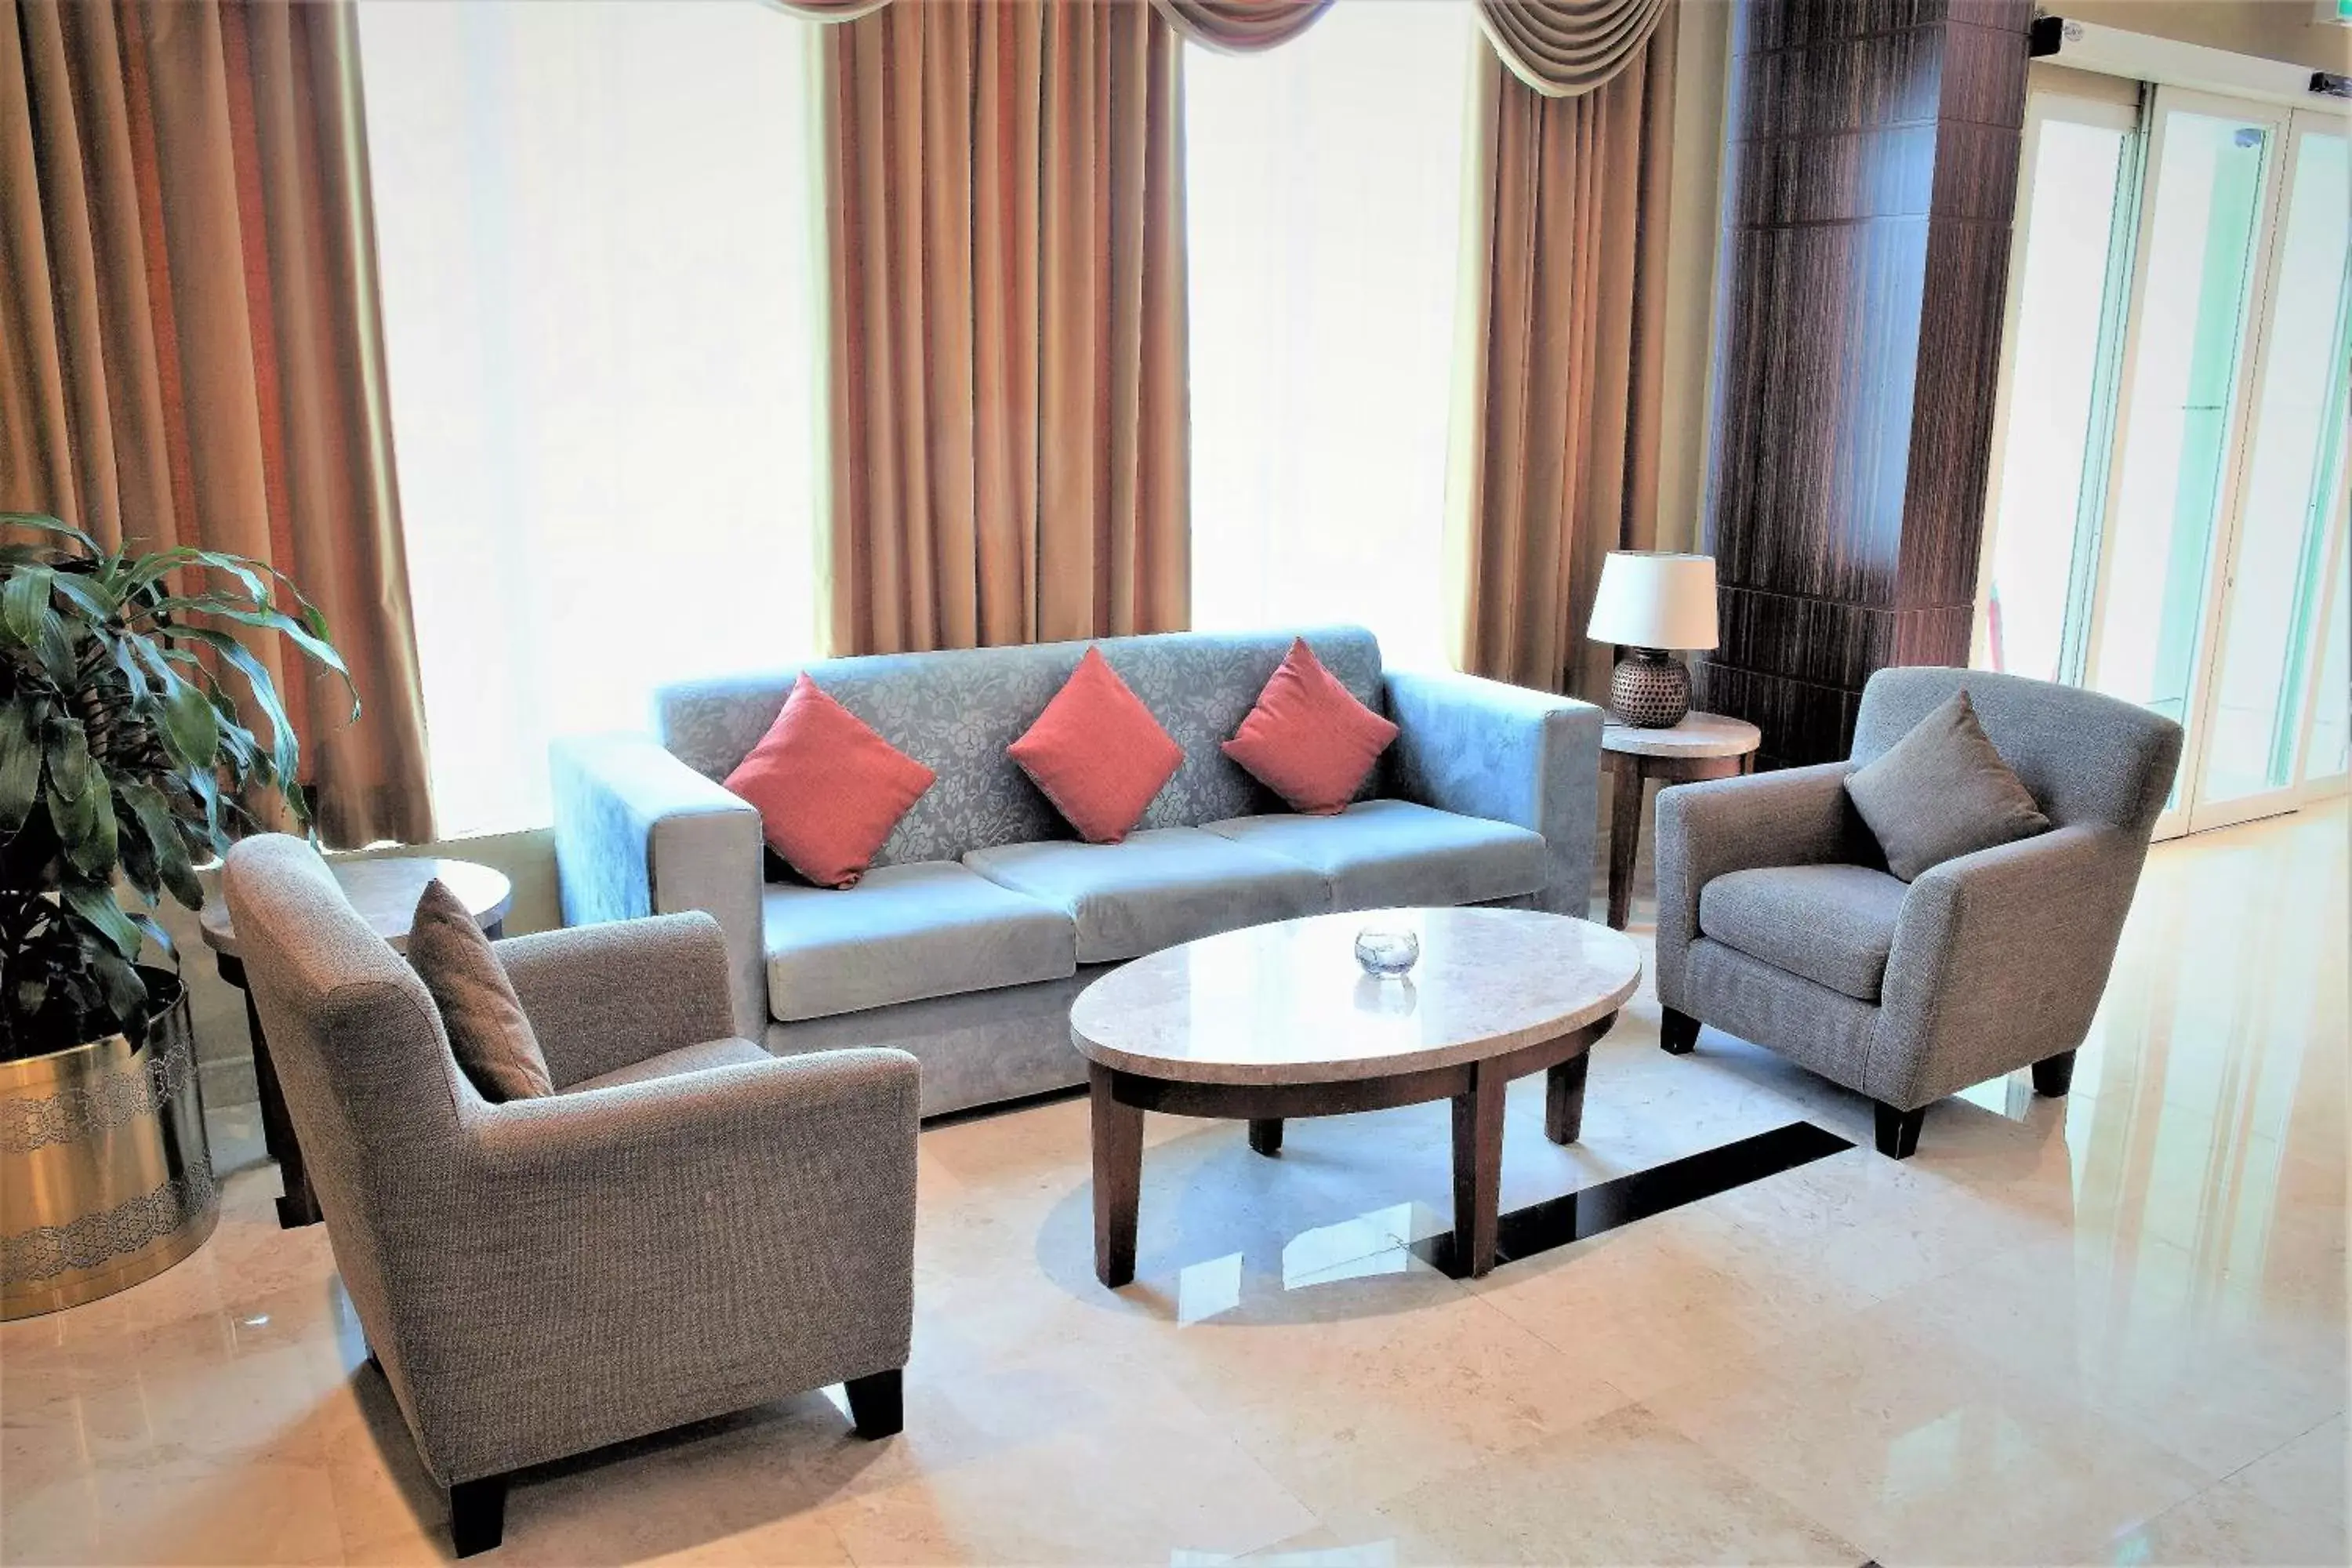 Lobby or reception, Seating Area in Best Western Plus Salmiya